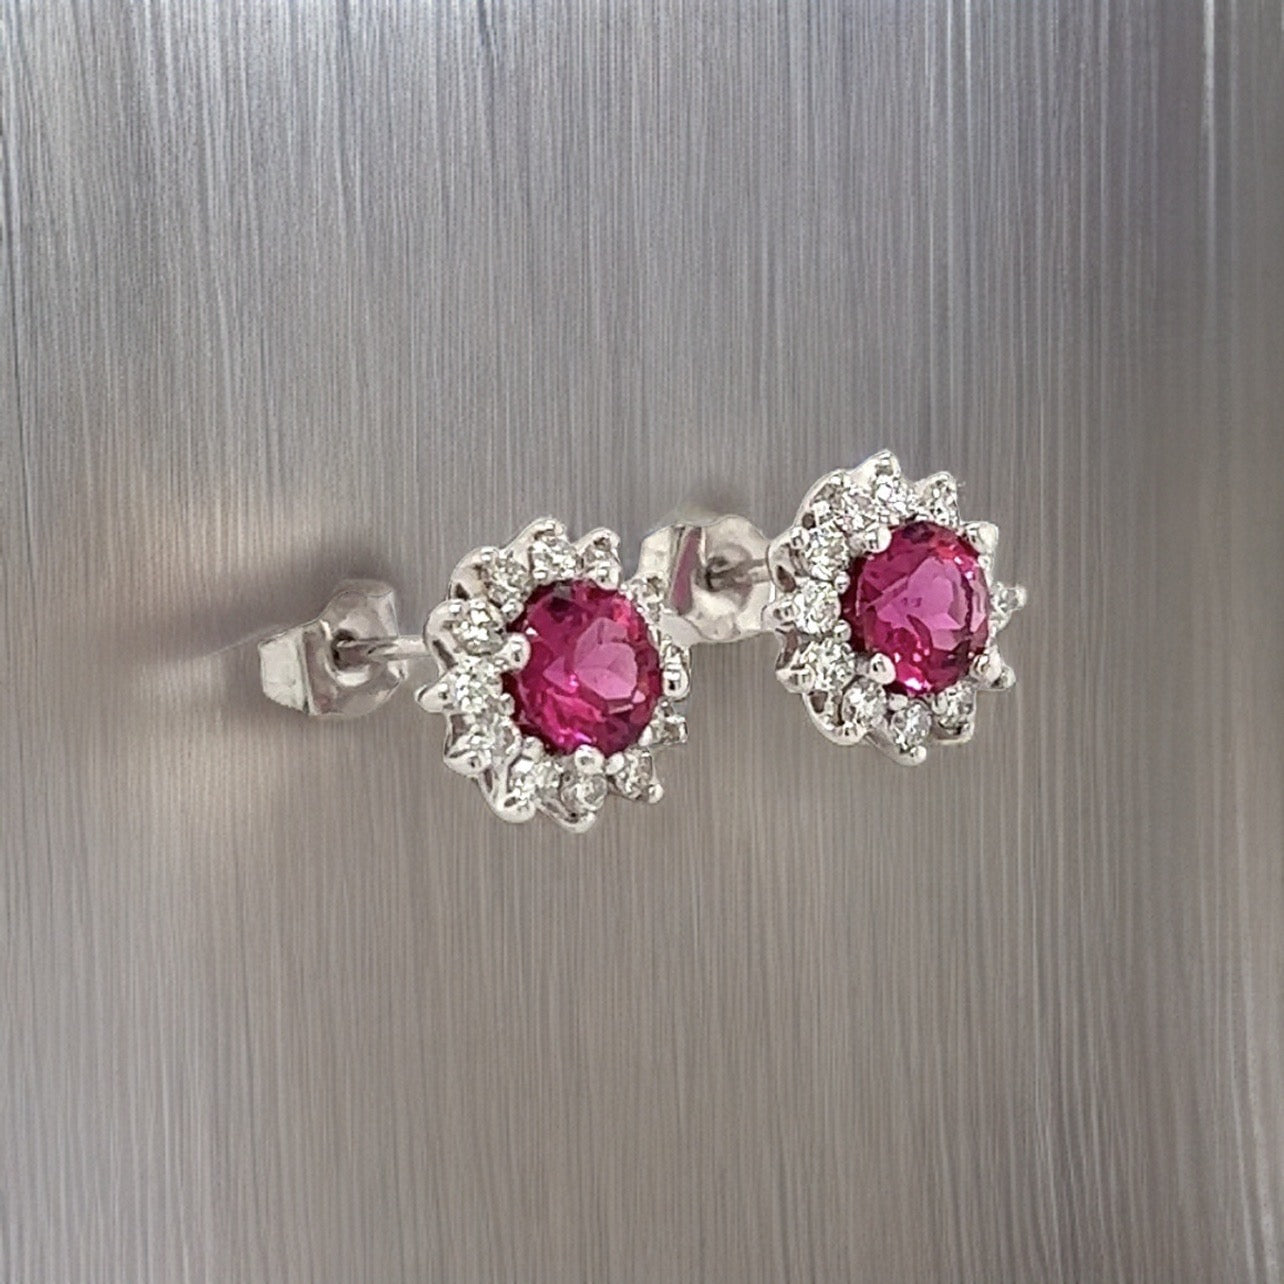 Diamond Rubellite Tourmaline Earrings 14k Gold 1.36 TCW Certified $3,950 211348 - Certified Fine Jewelry